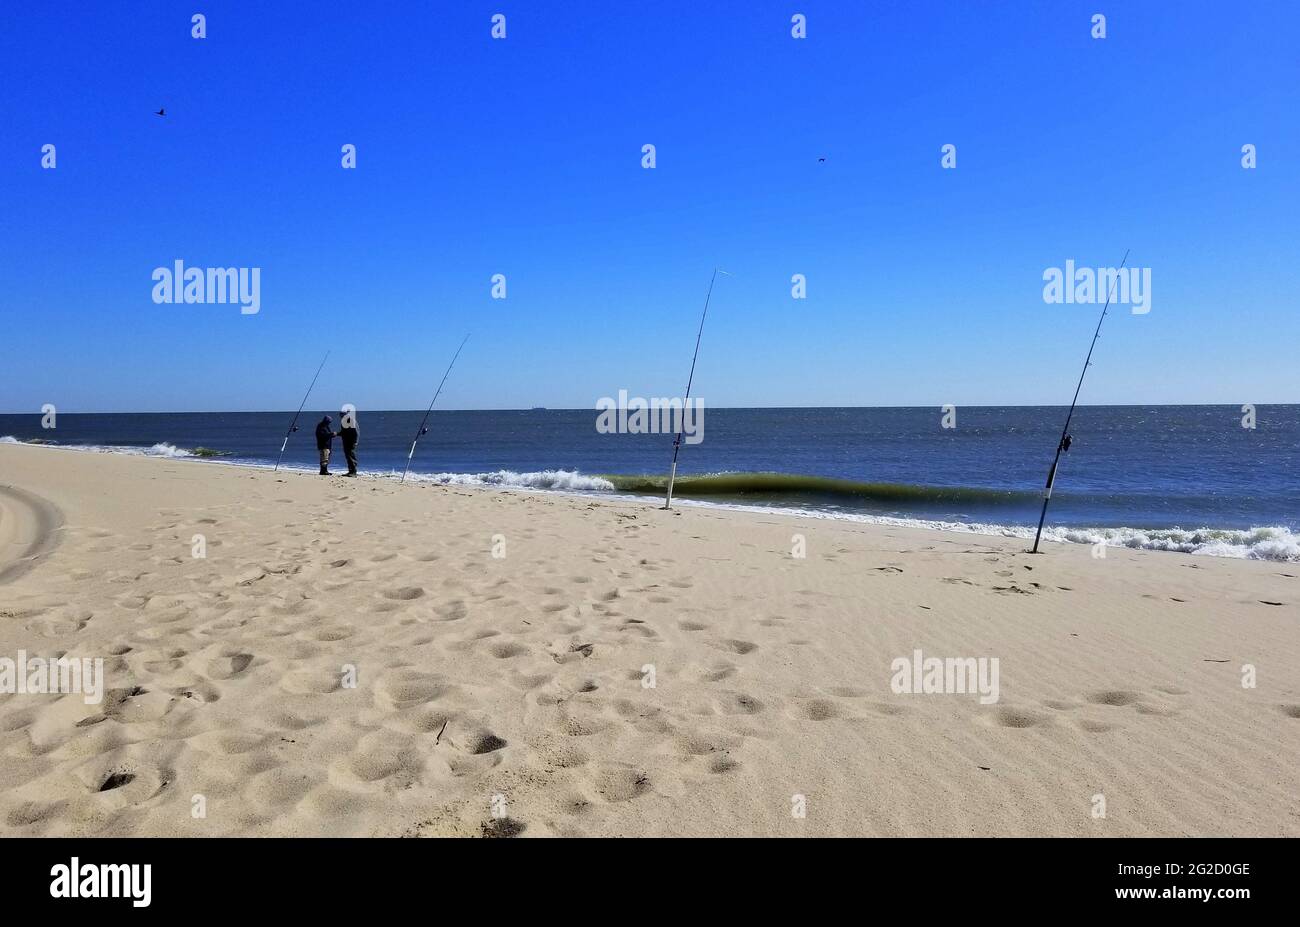 Playa de arena con cañas de pescar en un día soleado en la bahía de Delaware Foto de stock